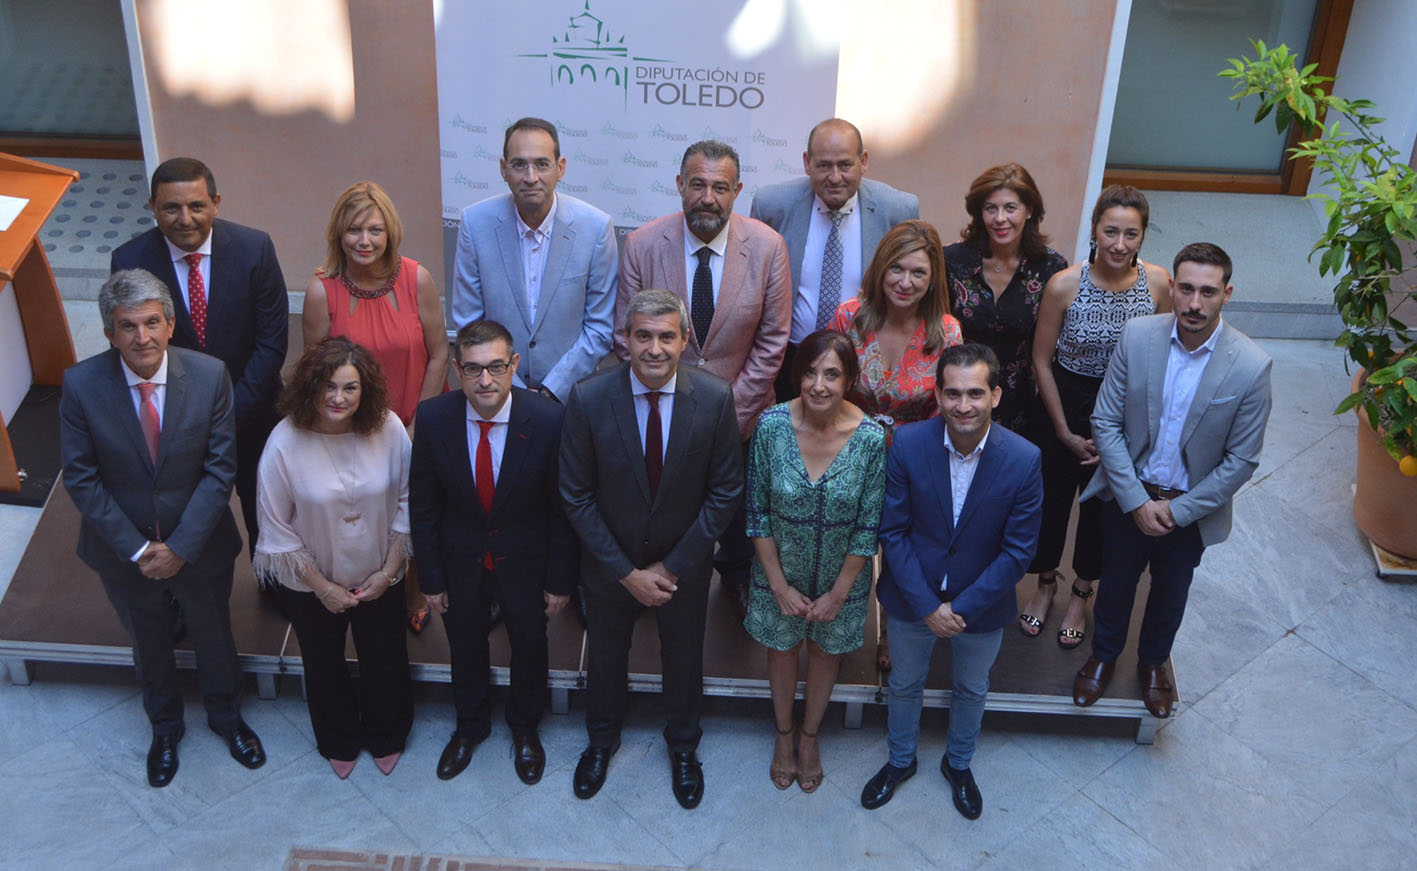 Álvaro Gutiérrez, en el centro de la imagen, con el equipo de Gobierno de la Diputación de Toledo.